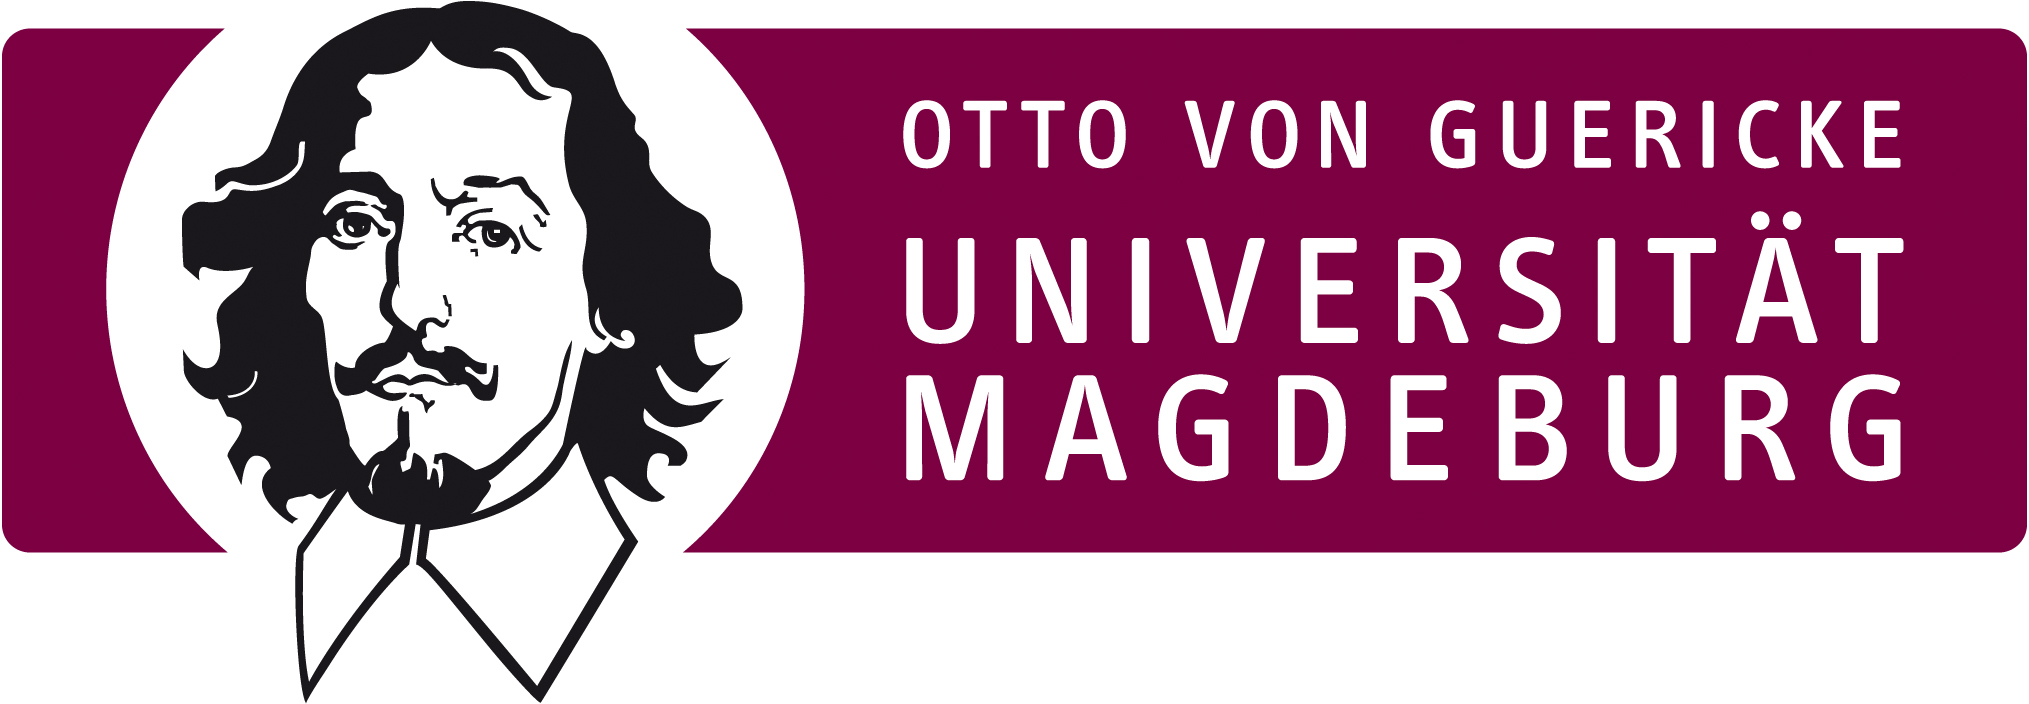 Otto-von-Guericke-Universität Magdeburg logo